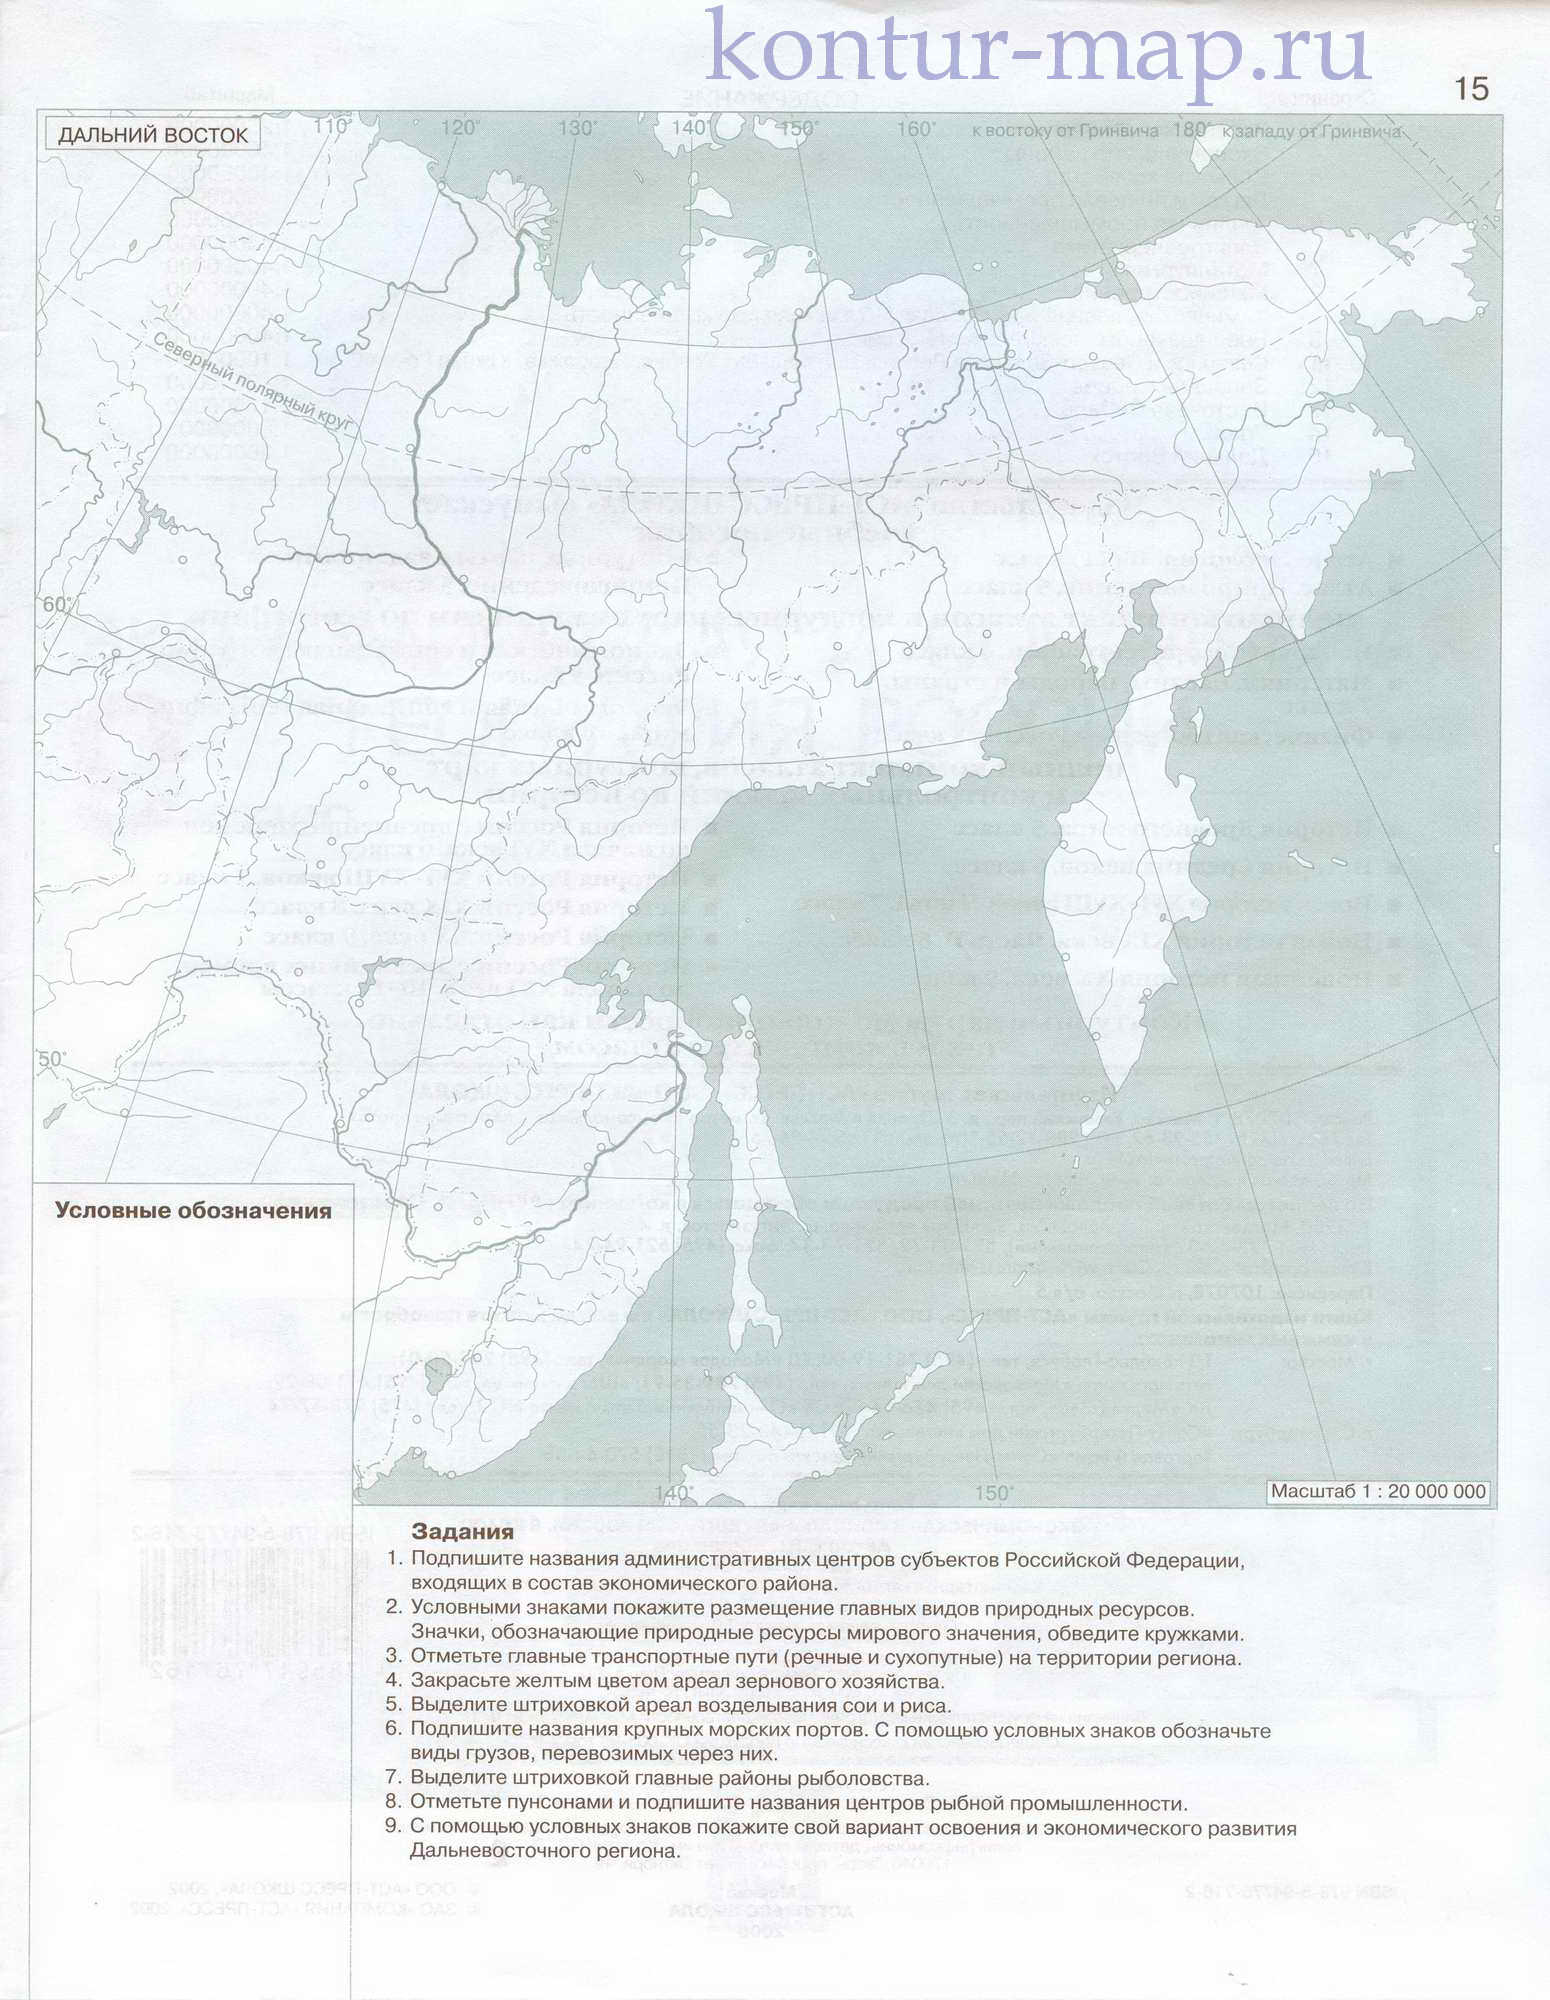 Контурная карта Дальнего Востока из атласа экономической и социальной географии России. Дальний Восток - контурная карта, A0 - 